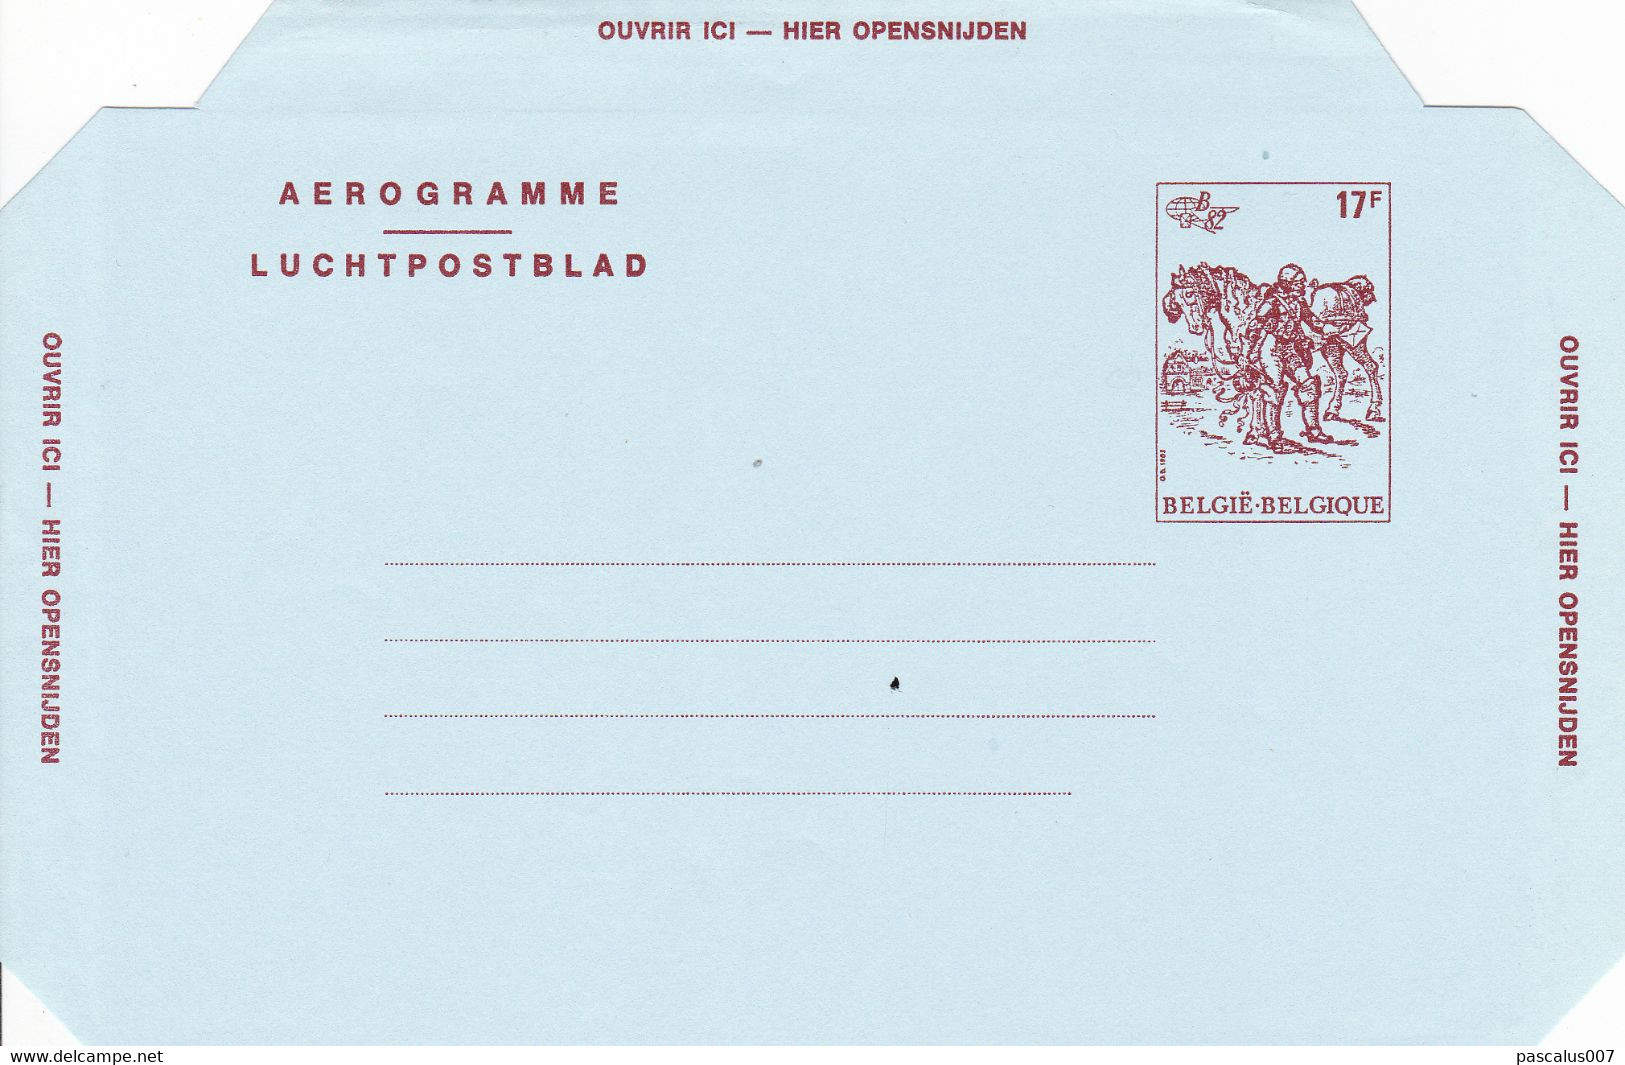 B01-325 P147-019I - Entier Postal - Aérogramme N°19 I (FN) Belgica 1982 - 17 F - Représentation Du Cob 2074 - Estafette - Luchtpostbladen